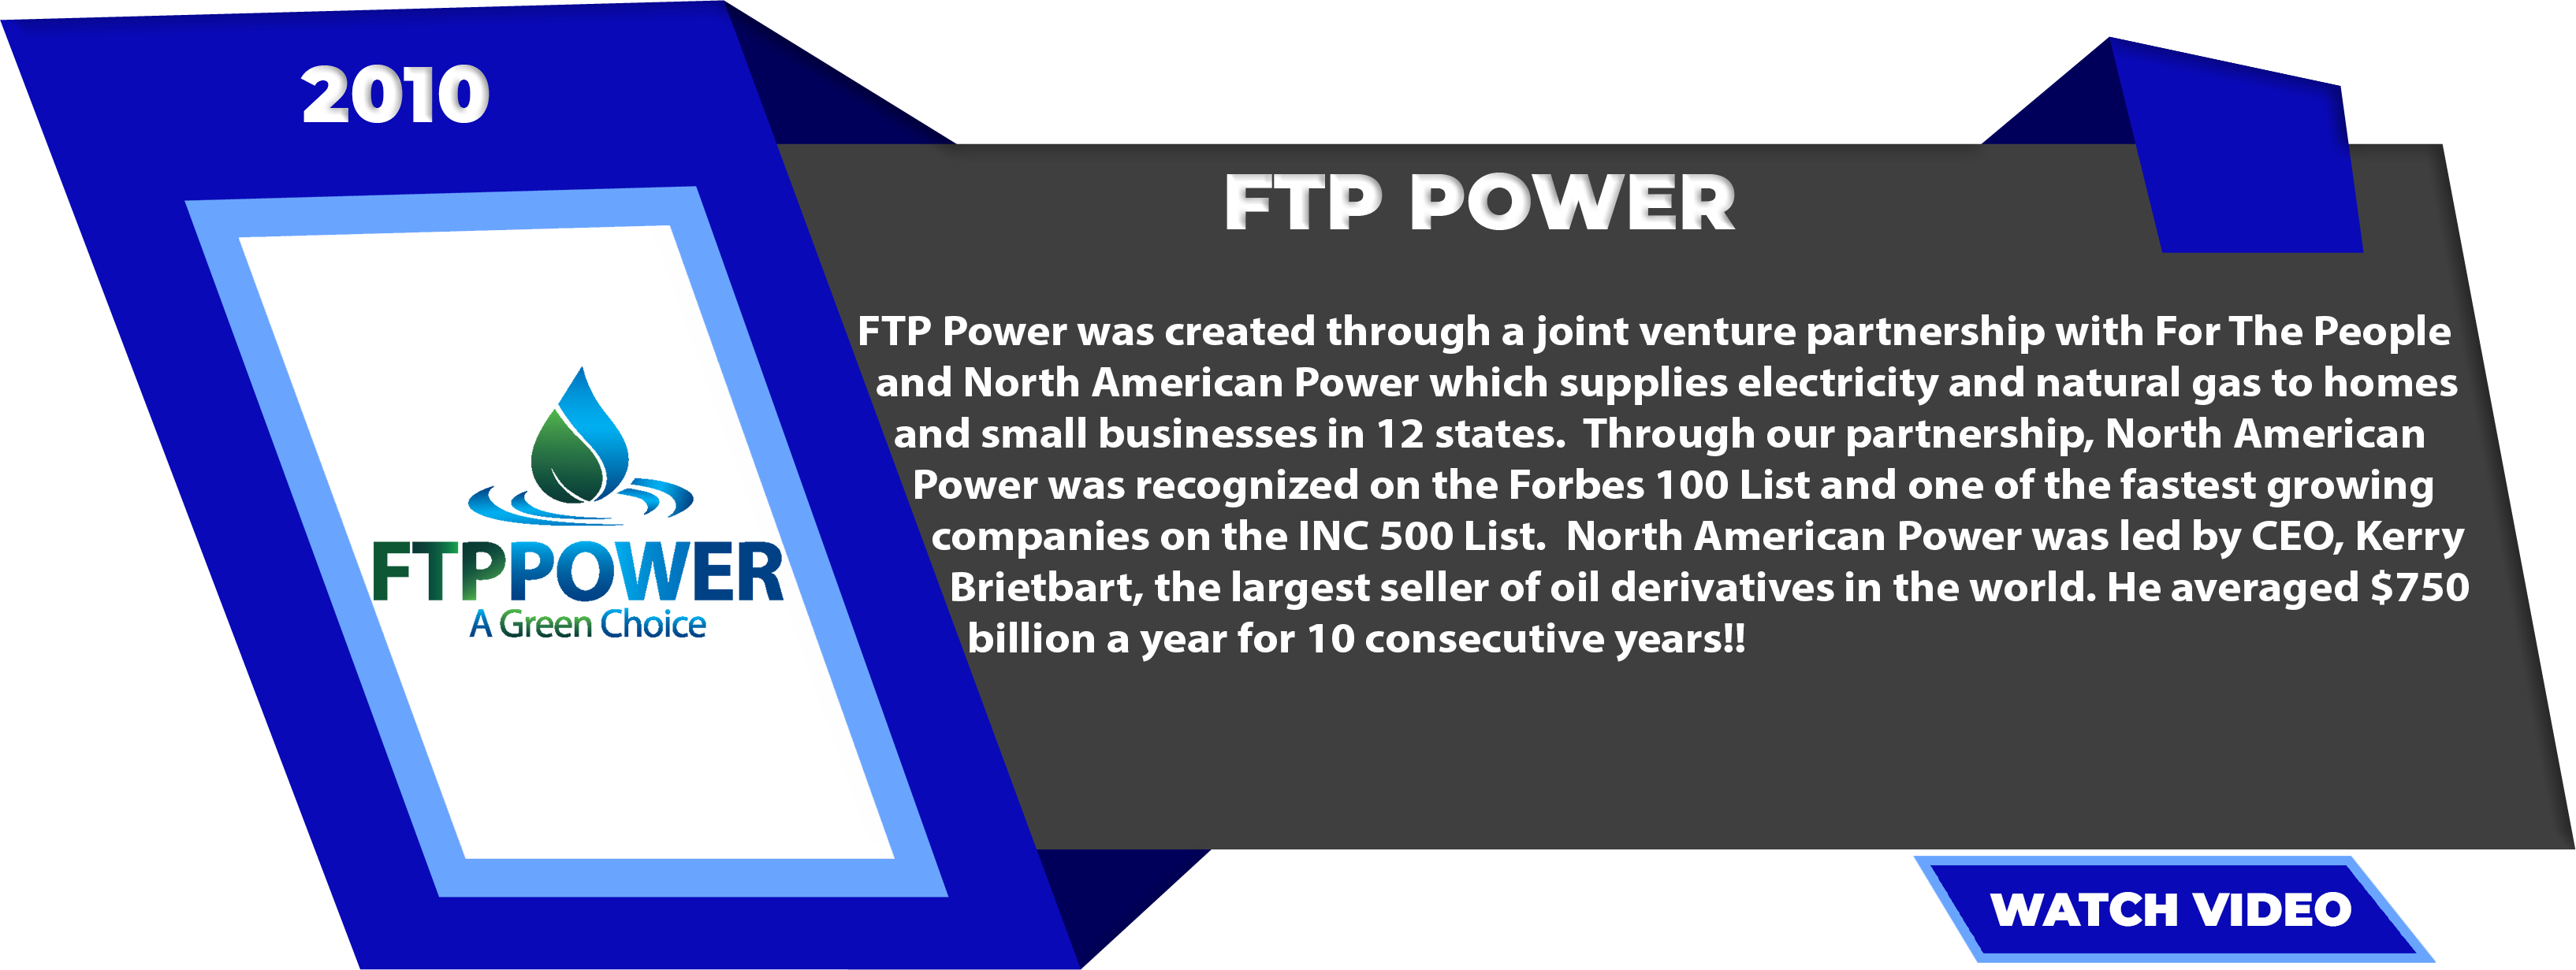 FTP Power 2010 – 2013